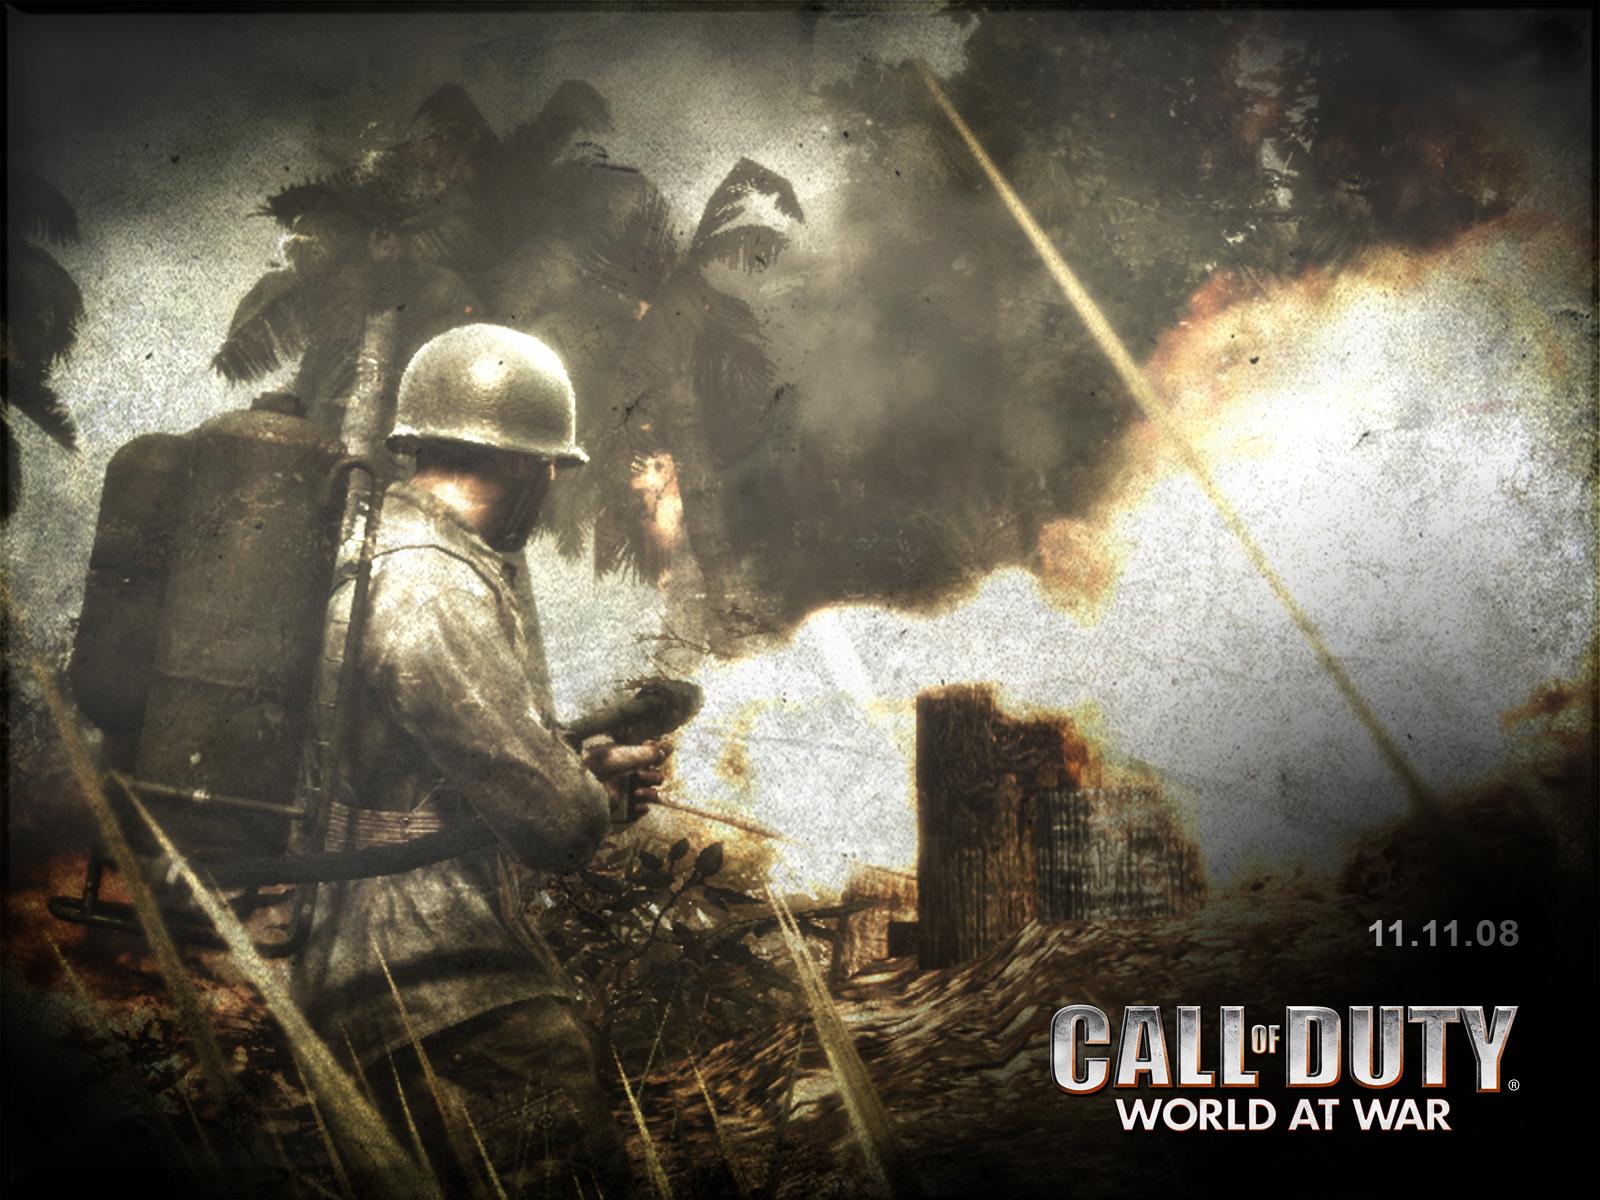 Call_of_duty_world_at_war 11 - Call Of Duty World At War Wallpaper